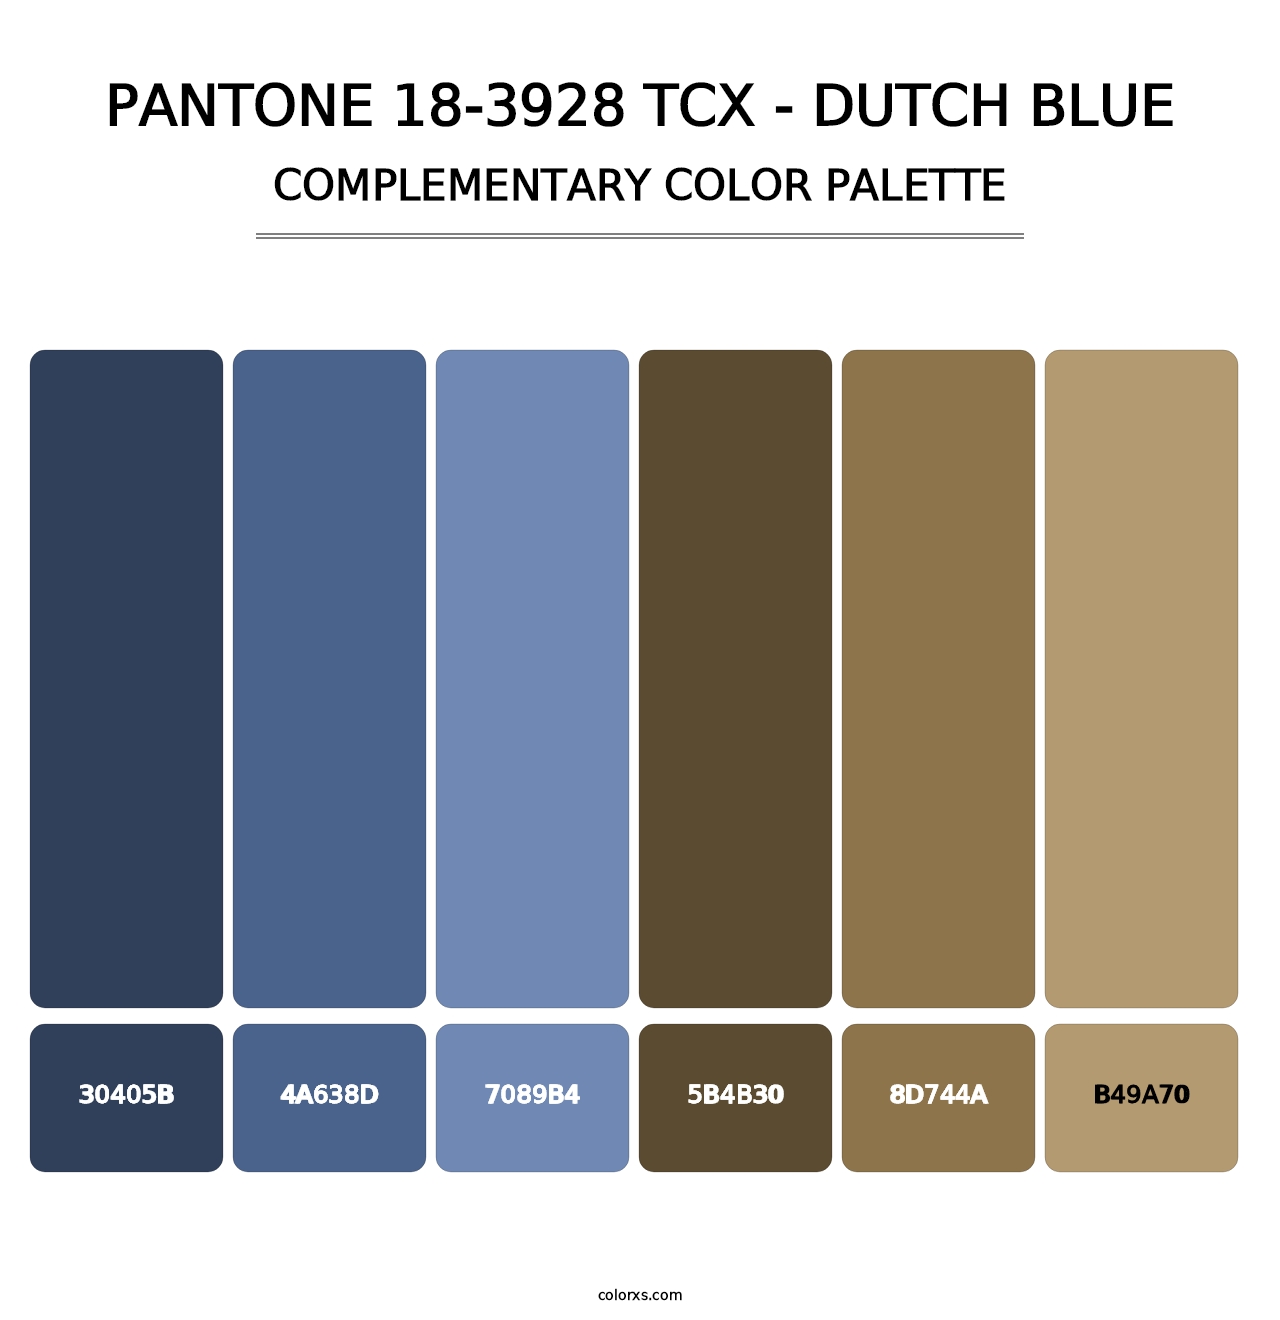 PANTONE 18-3928 TCX - Dutch Blue - Complementary Color Palette